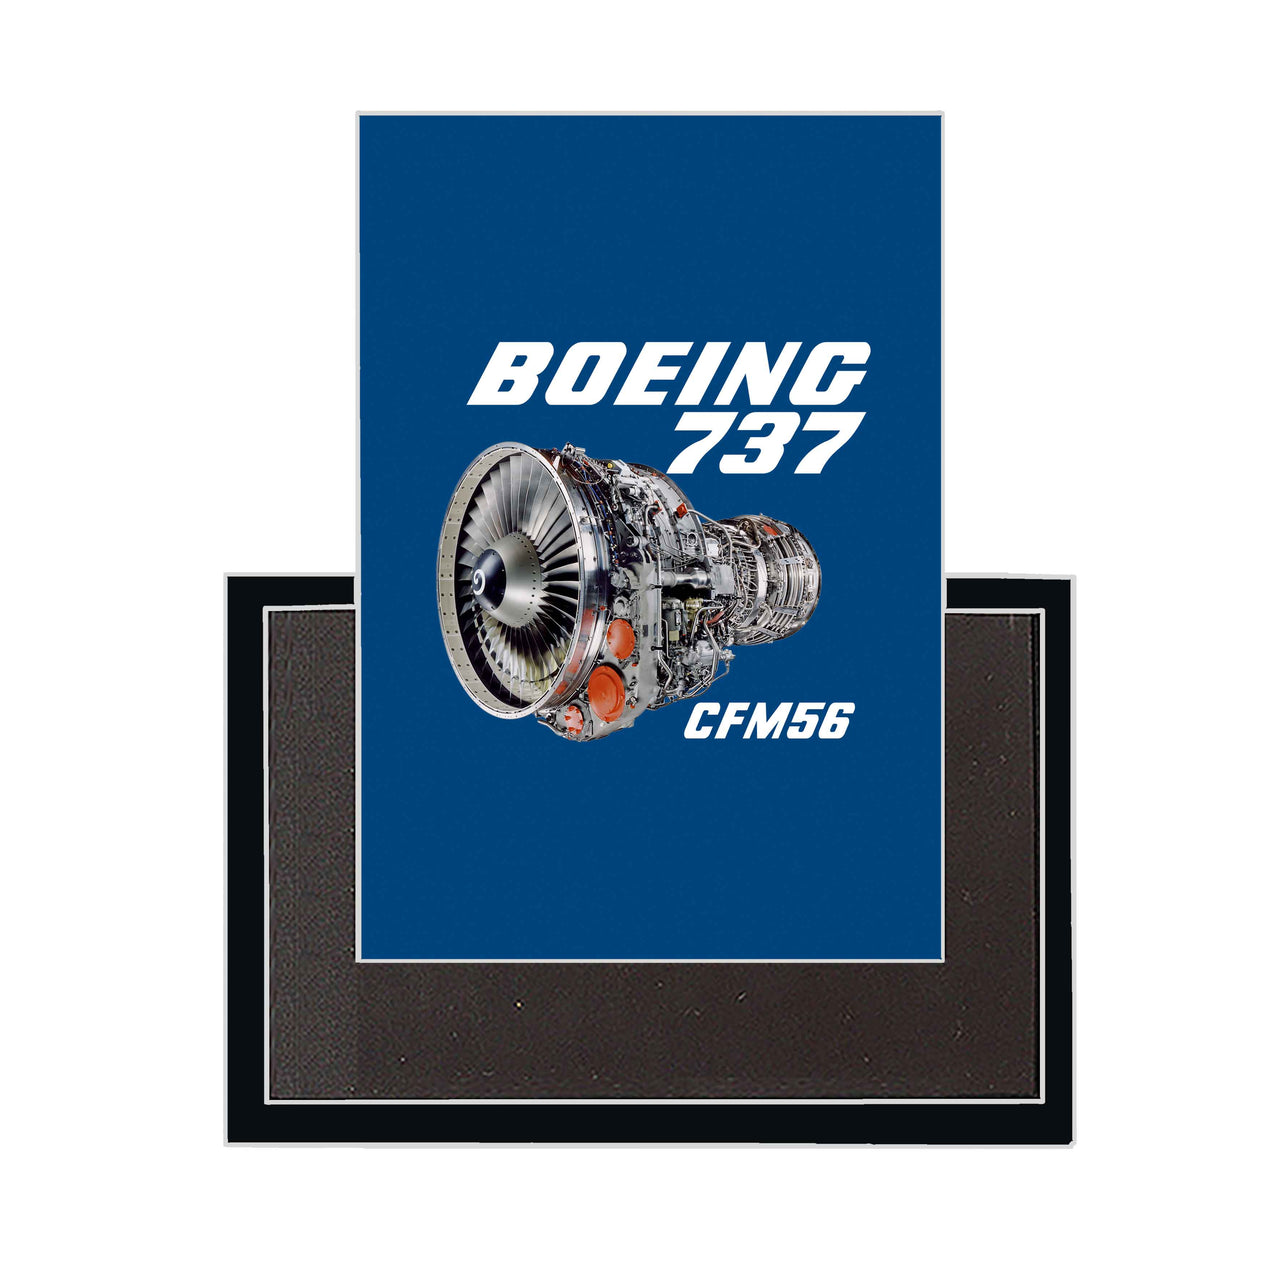 Boeing 737 Engine & CFM56 Designed Magnets